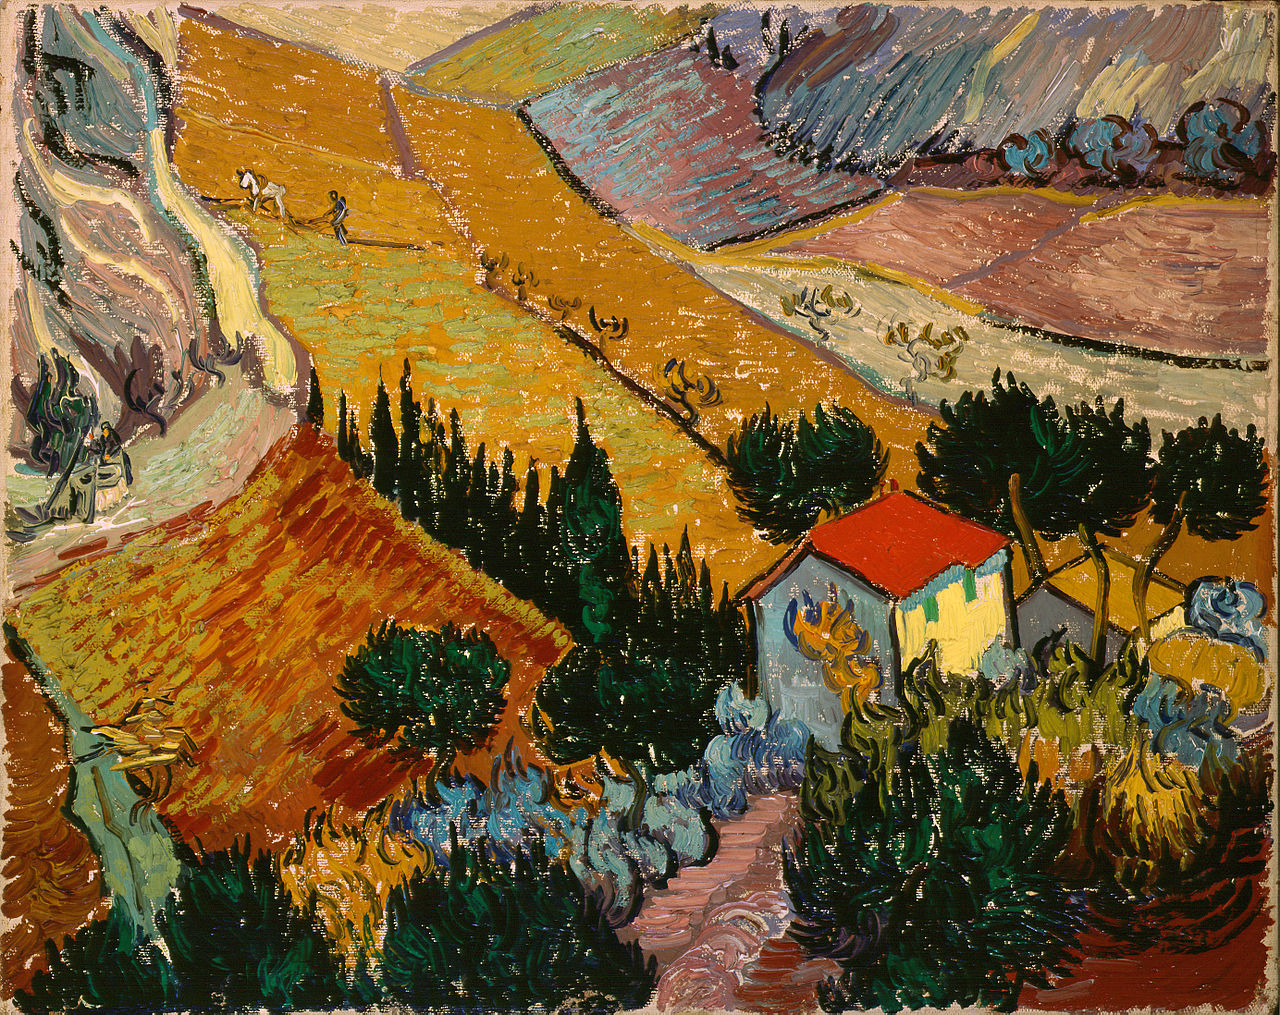 Tájkép házzal és szántóvetővel by Vincent van Gogh - 1889 - 33 x 41.4 cm 